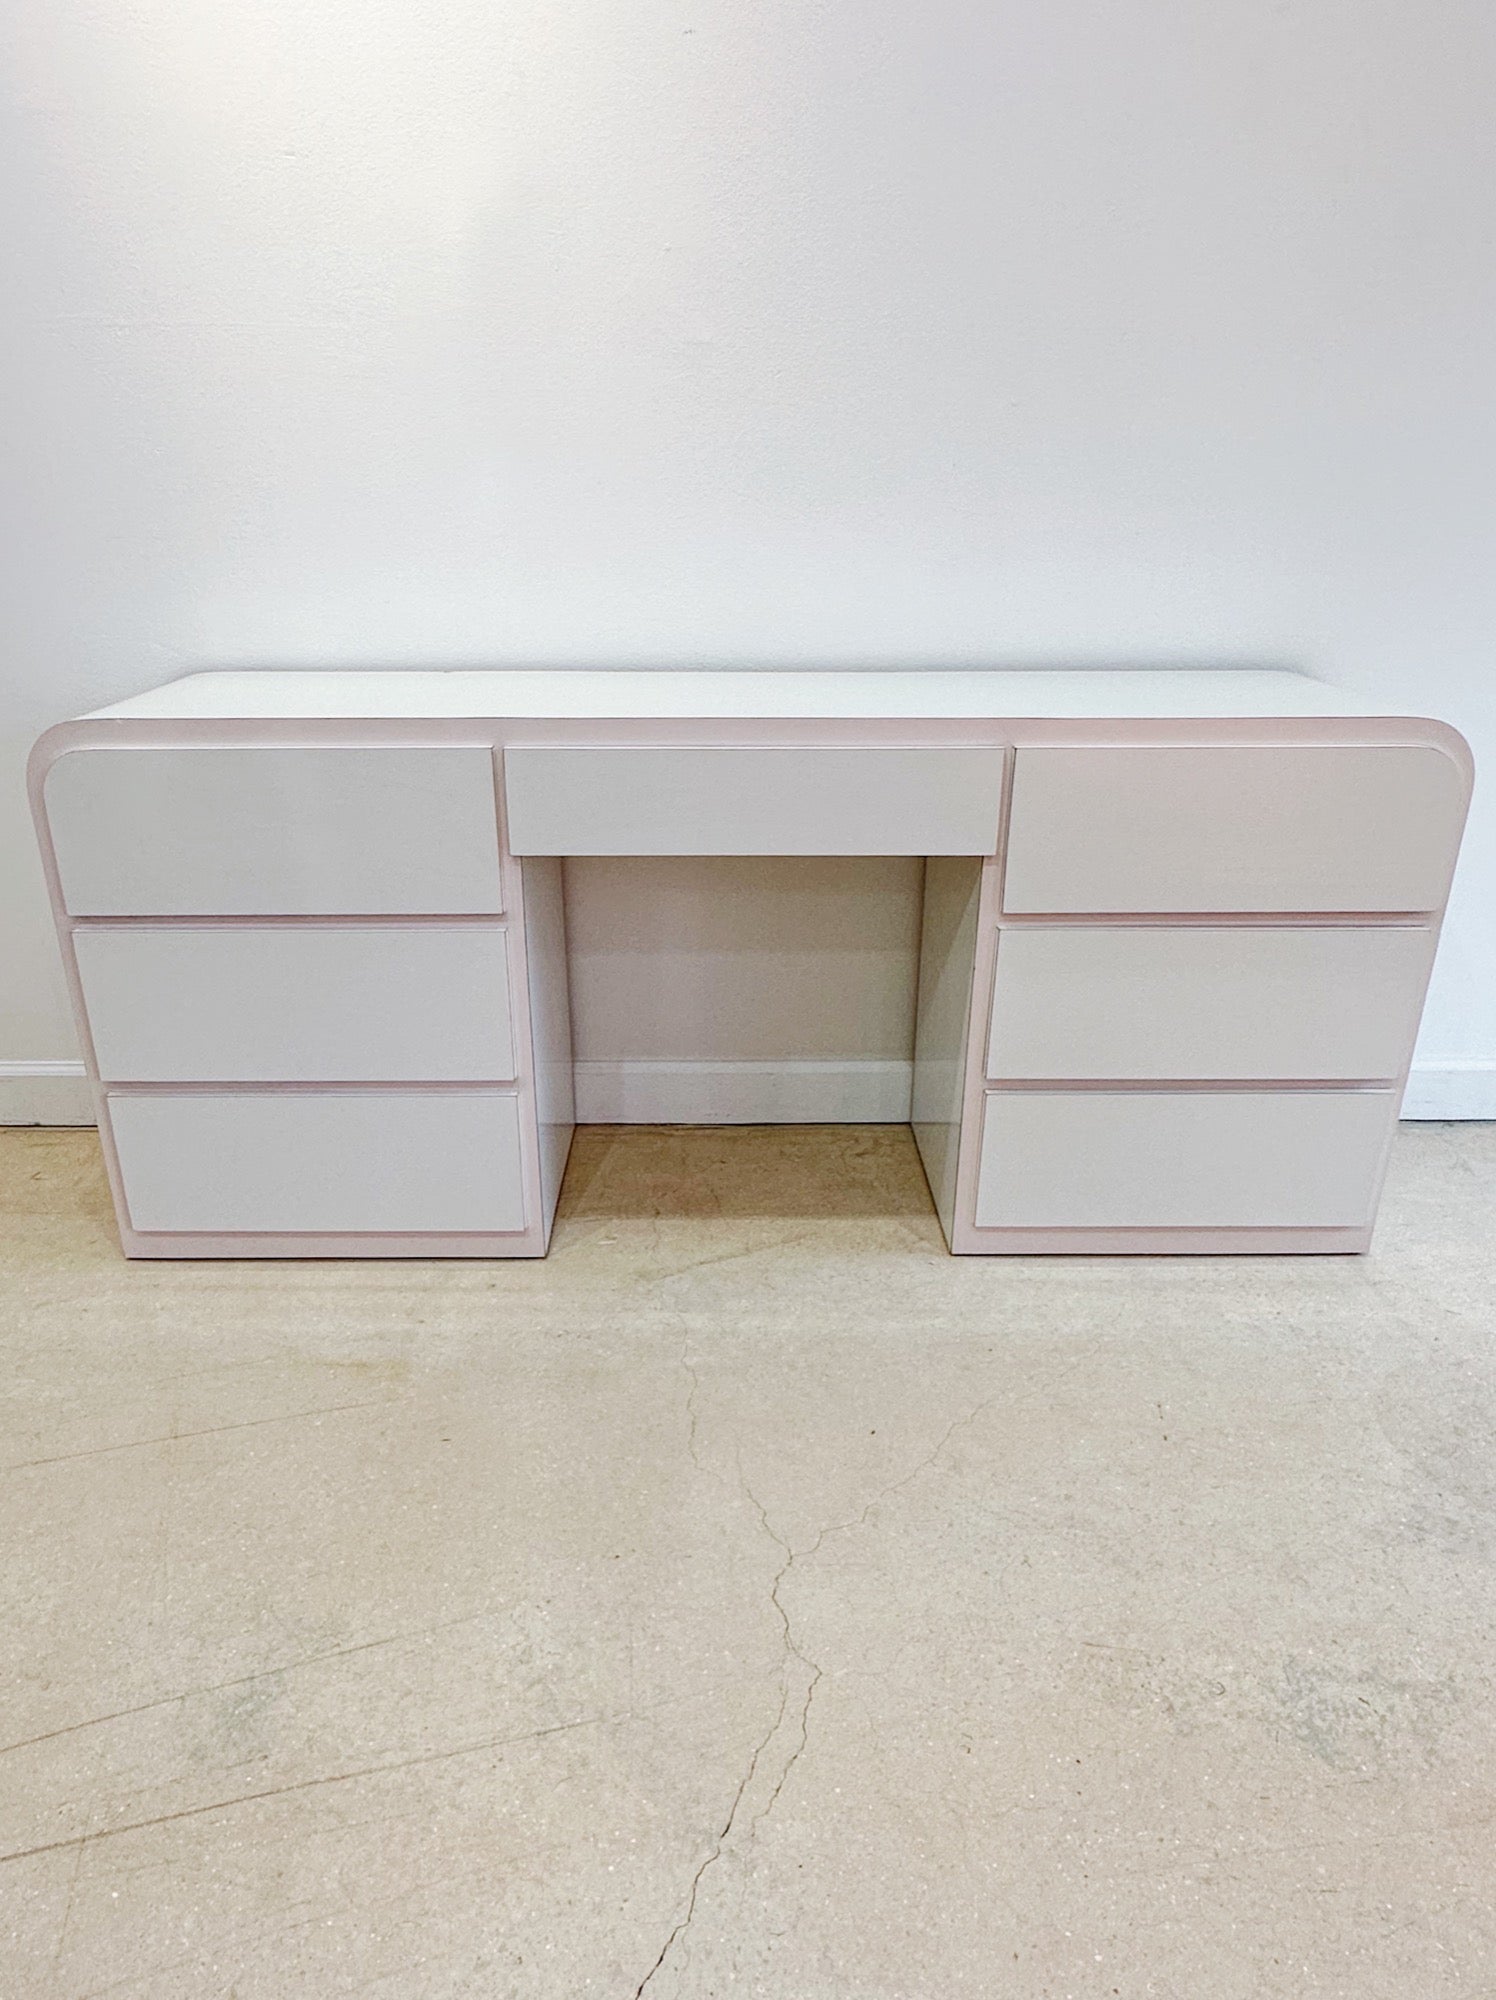 White + Pink Laminate Vanity Desk - Rehaus